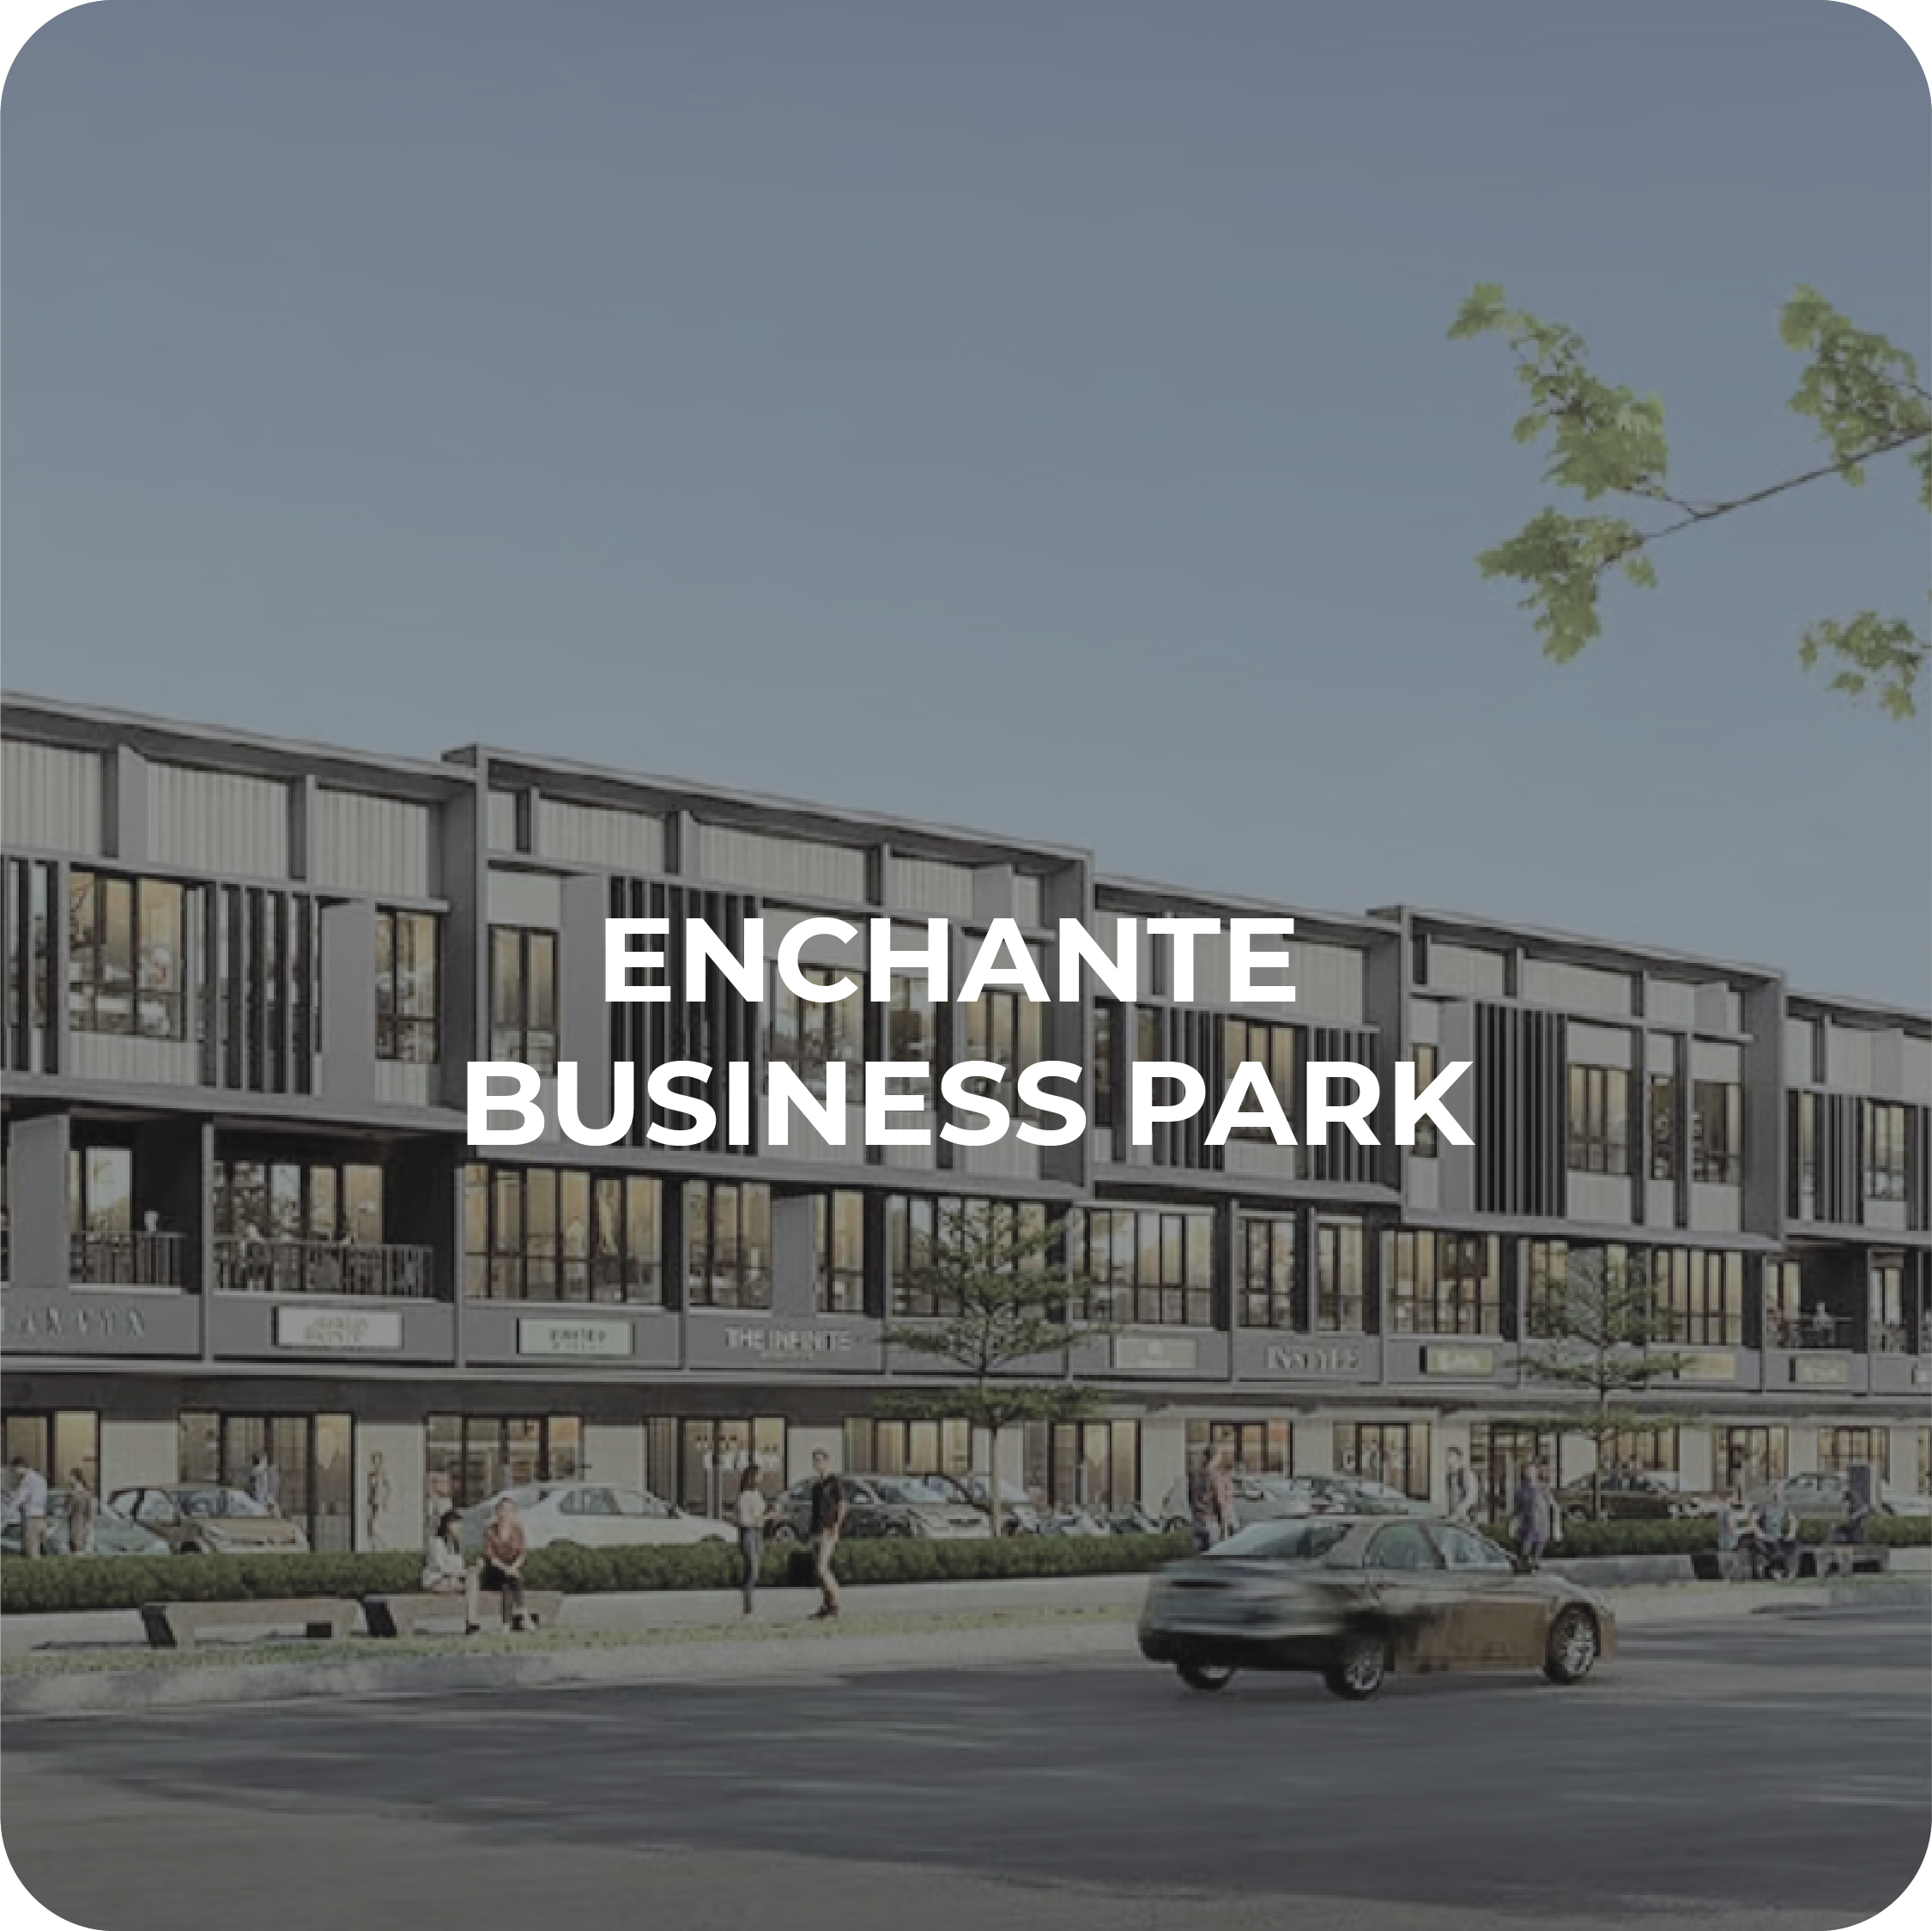 Enchante Business Park